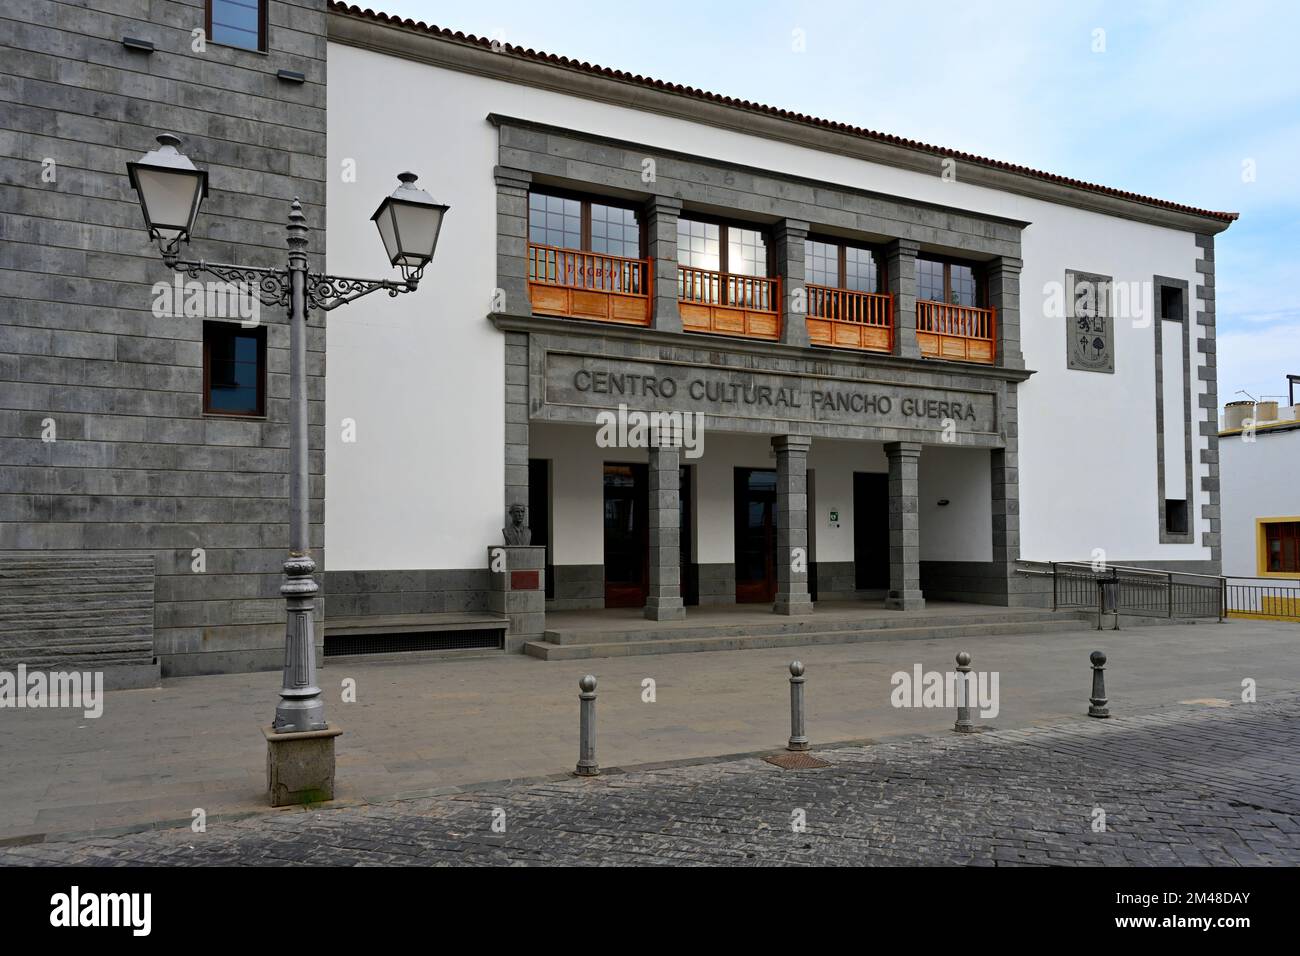 Centro Cultural Pancho Guerra, cultural centre, building in village of San Bartolomé de Tirajana, Gran Canaria Stock Photo